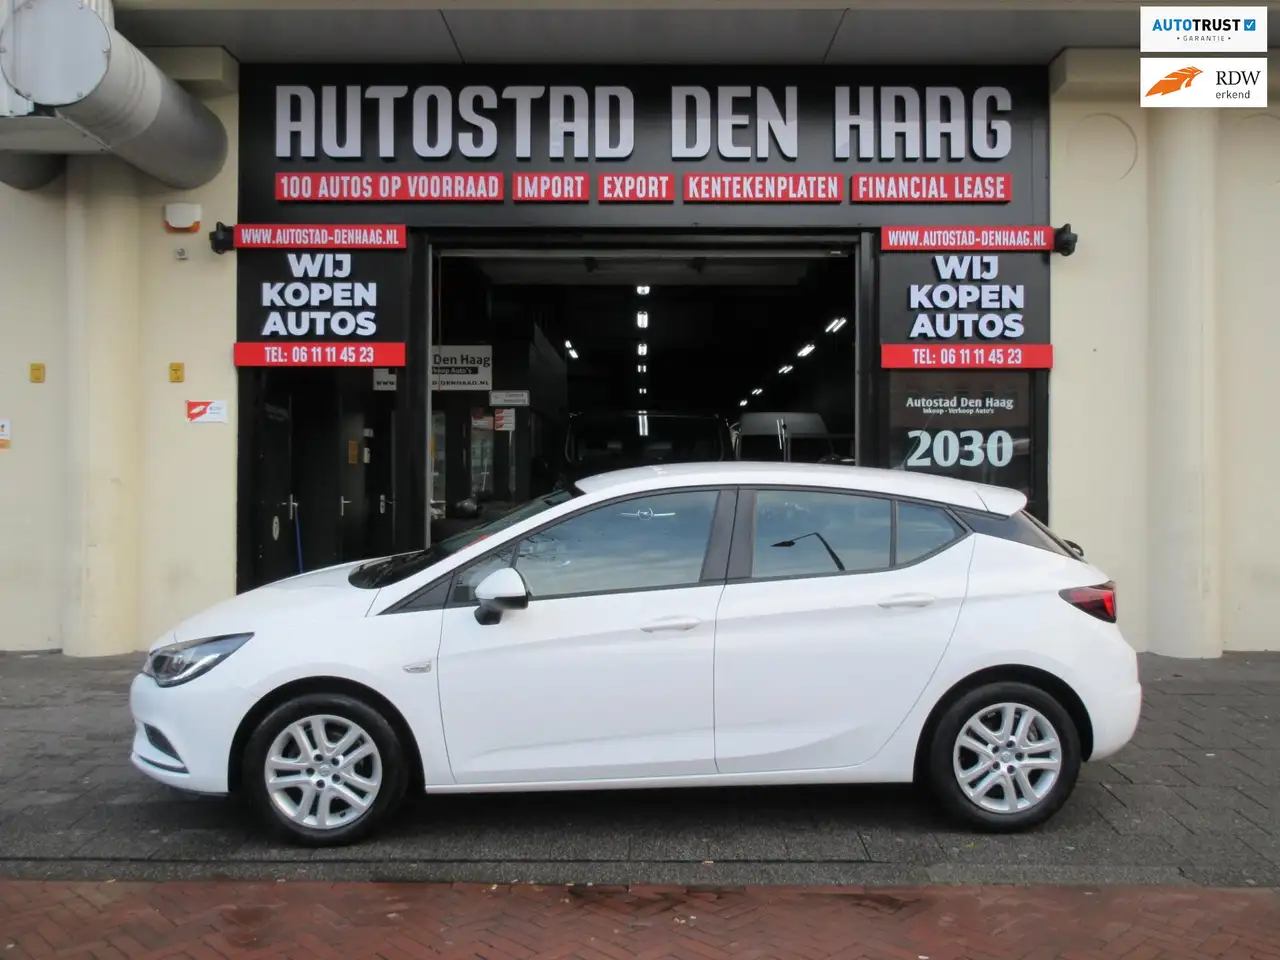 Opel Astra occasion | Hatchback | Wit | in DEN HAAG voor € 9.950,-